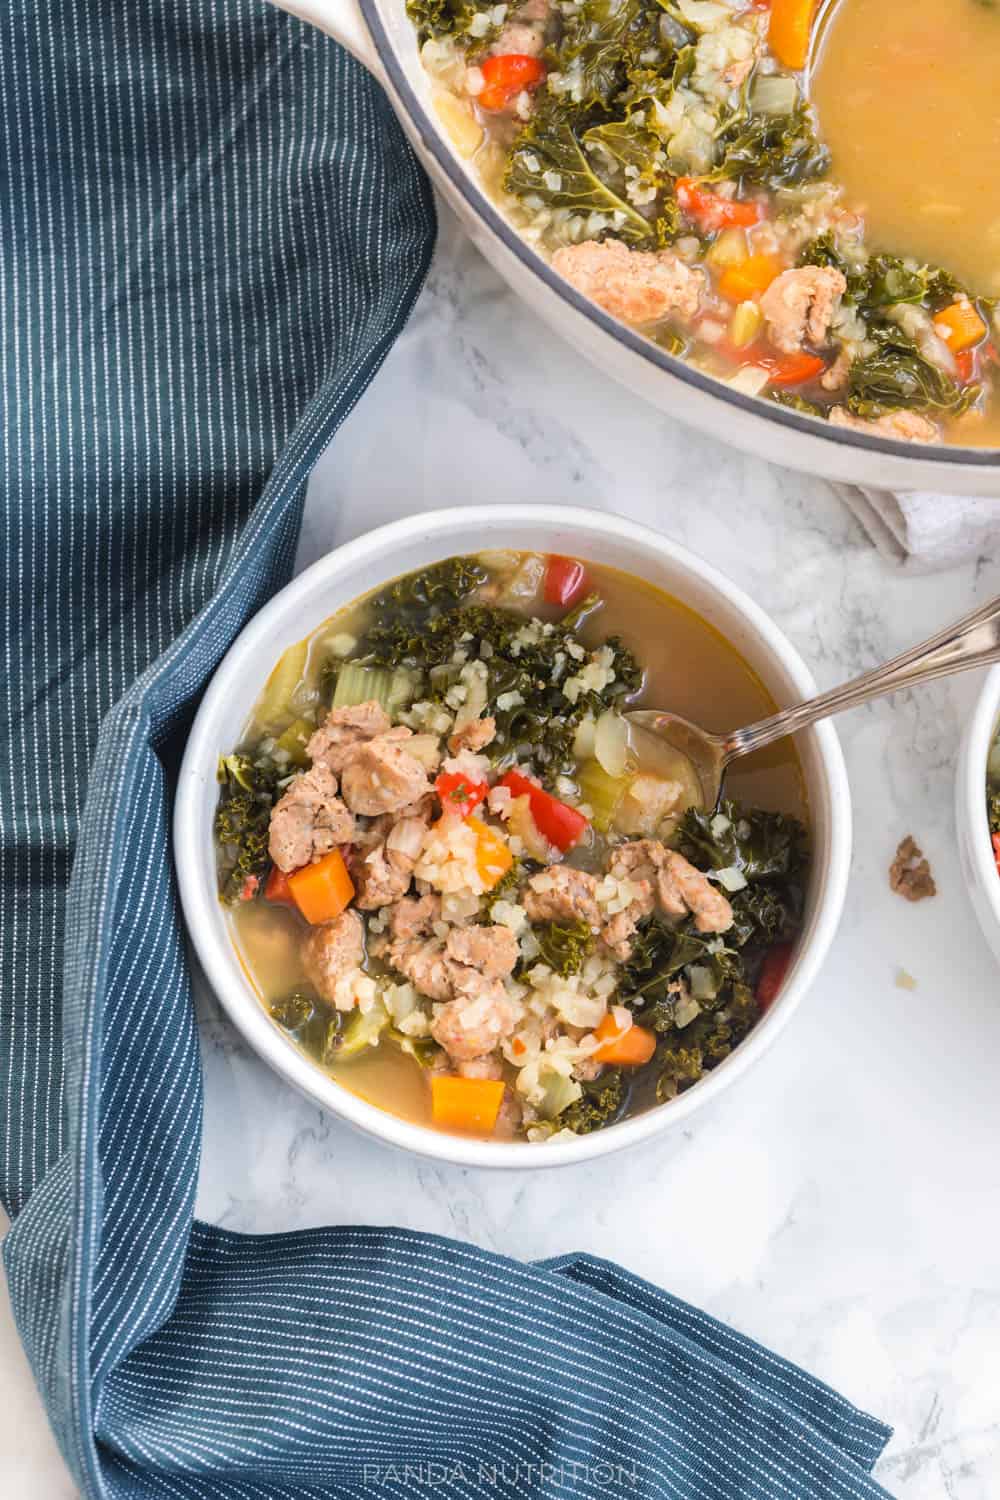 Healthy Kale and Sausage Soup (Paleo, Whole30) | Randa Nutrition